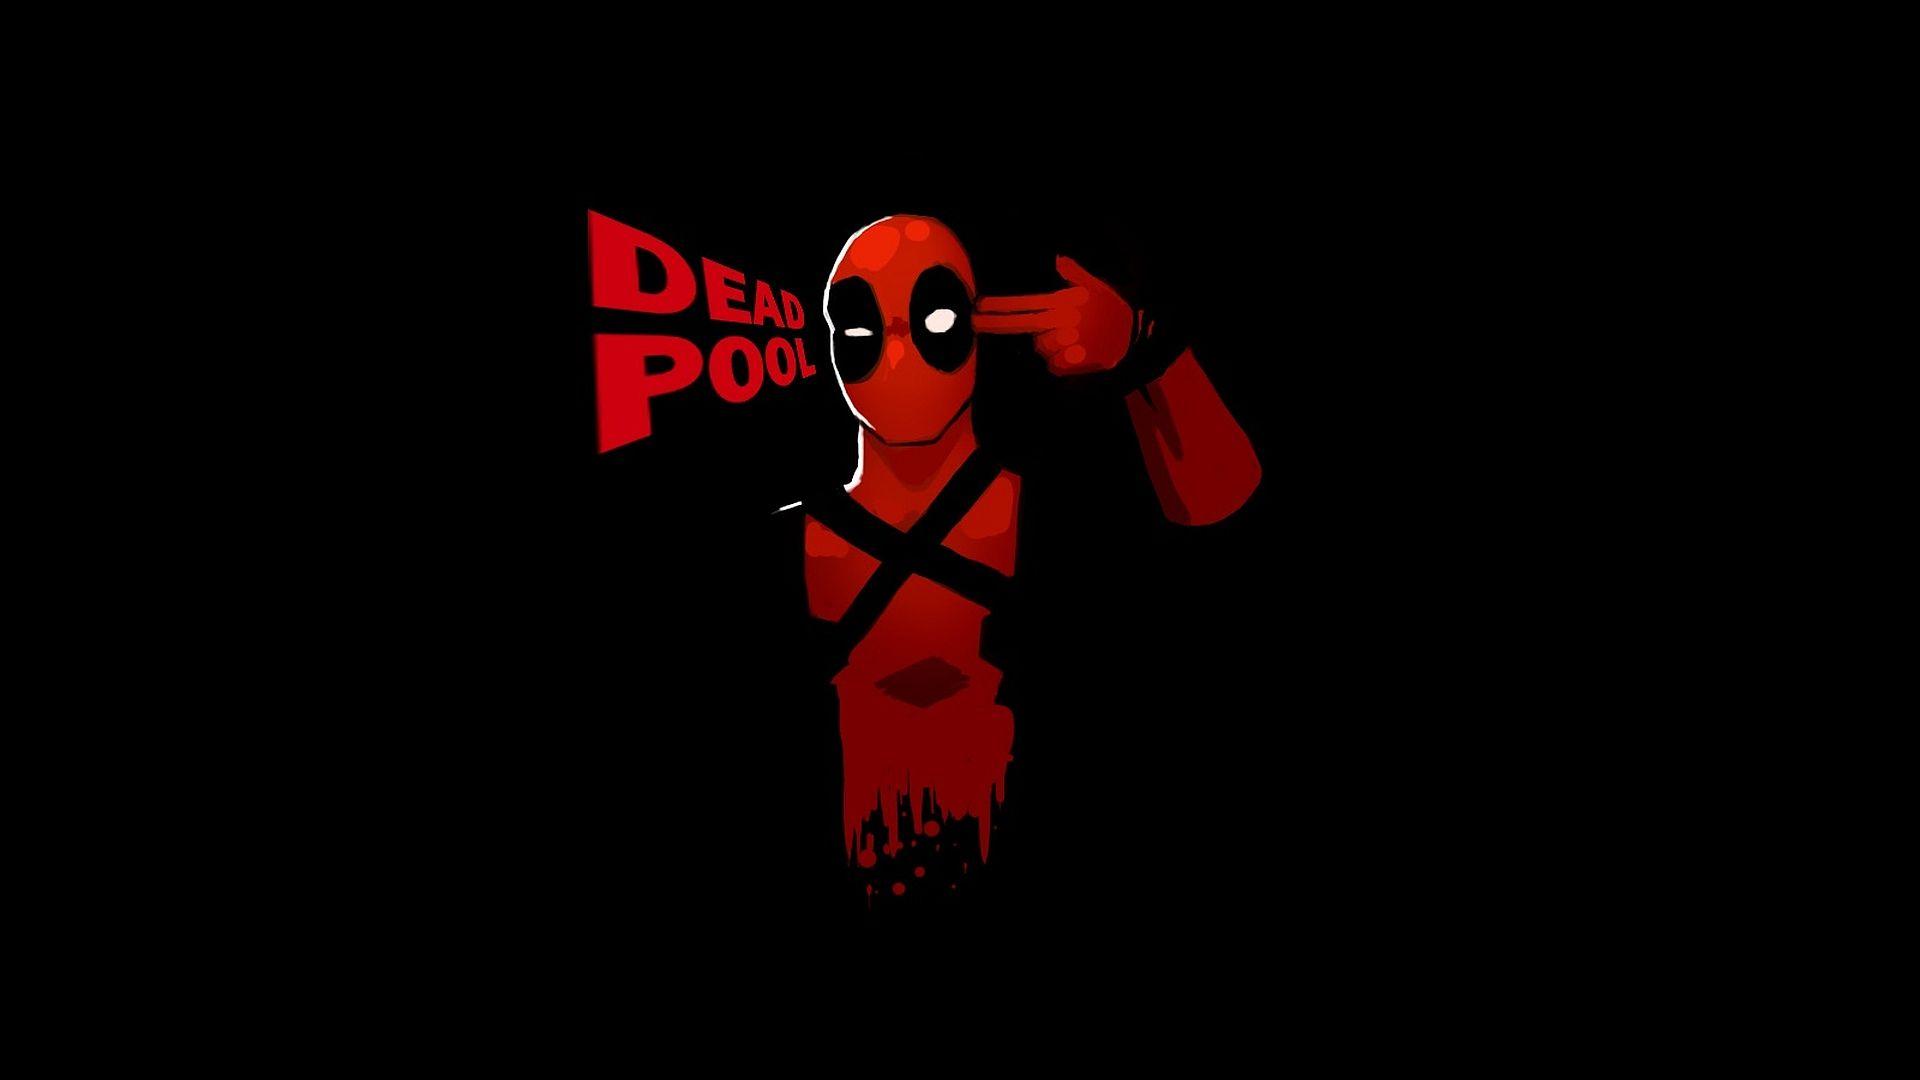 50+] Deadpool Live Wallpapers - WallpaperSafari